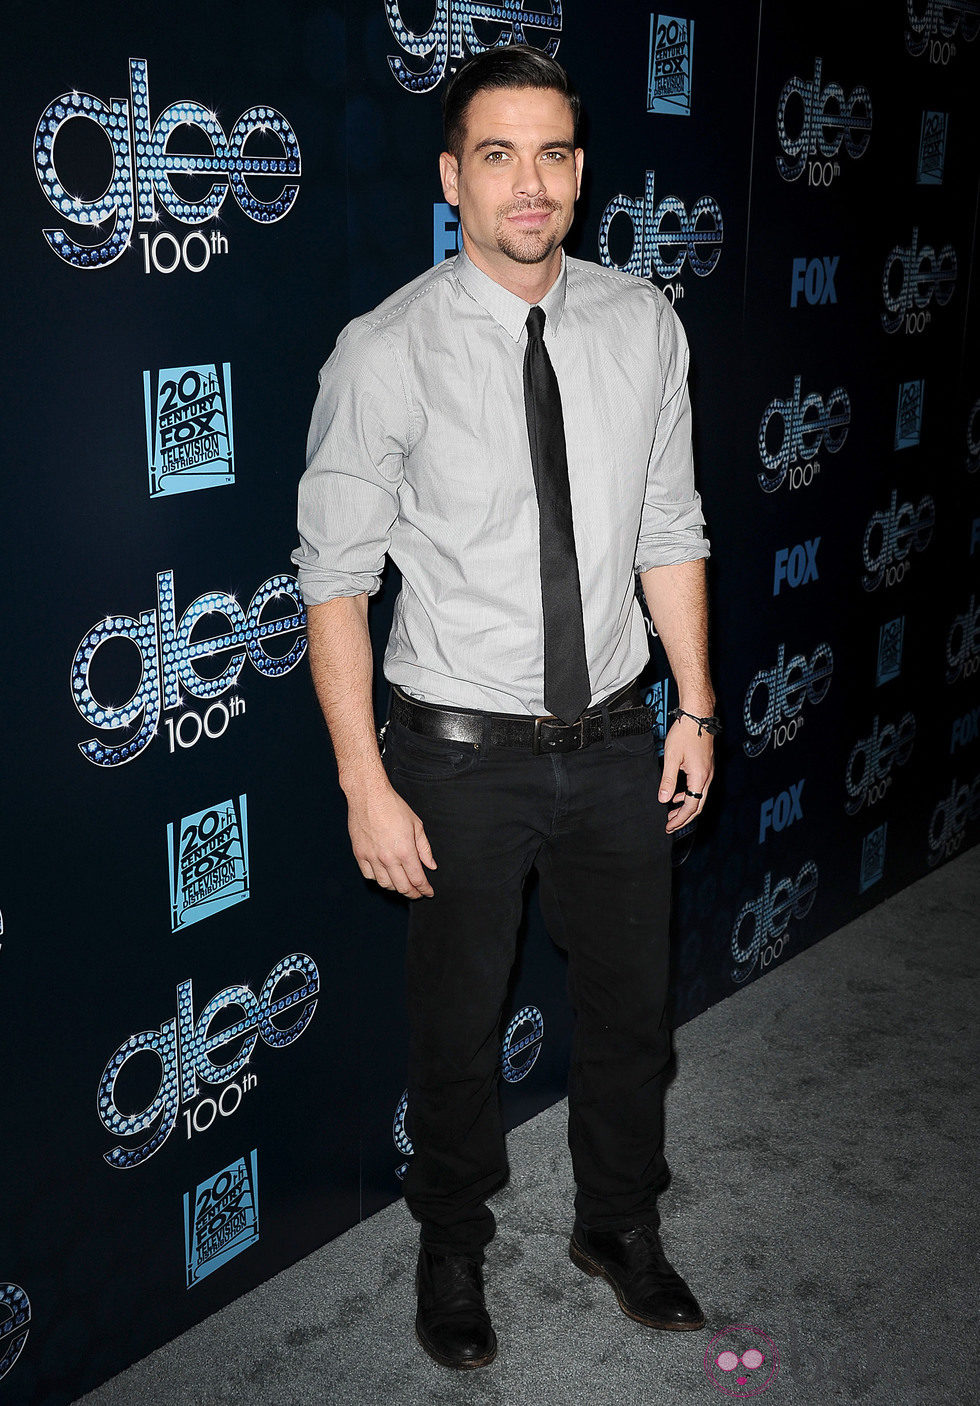 Mark Salling en la fiesta del episodio 100 de 'Glee'